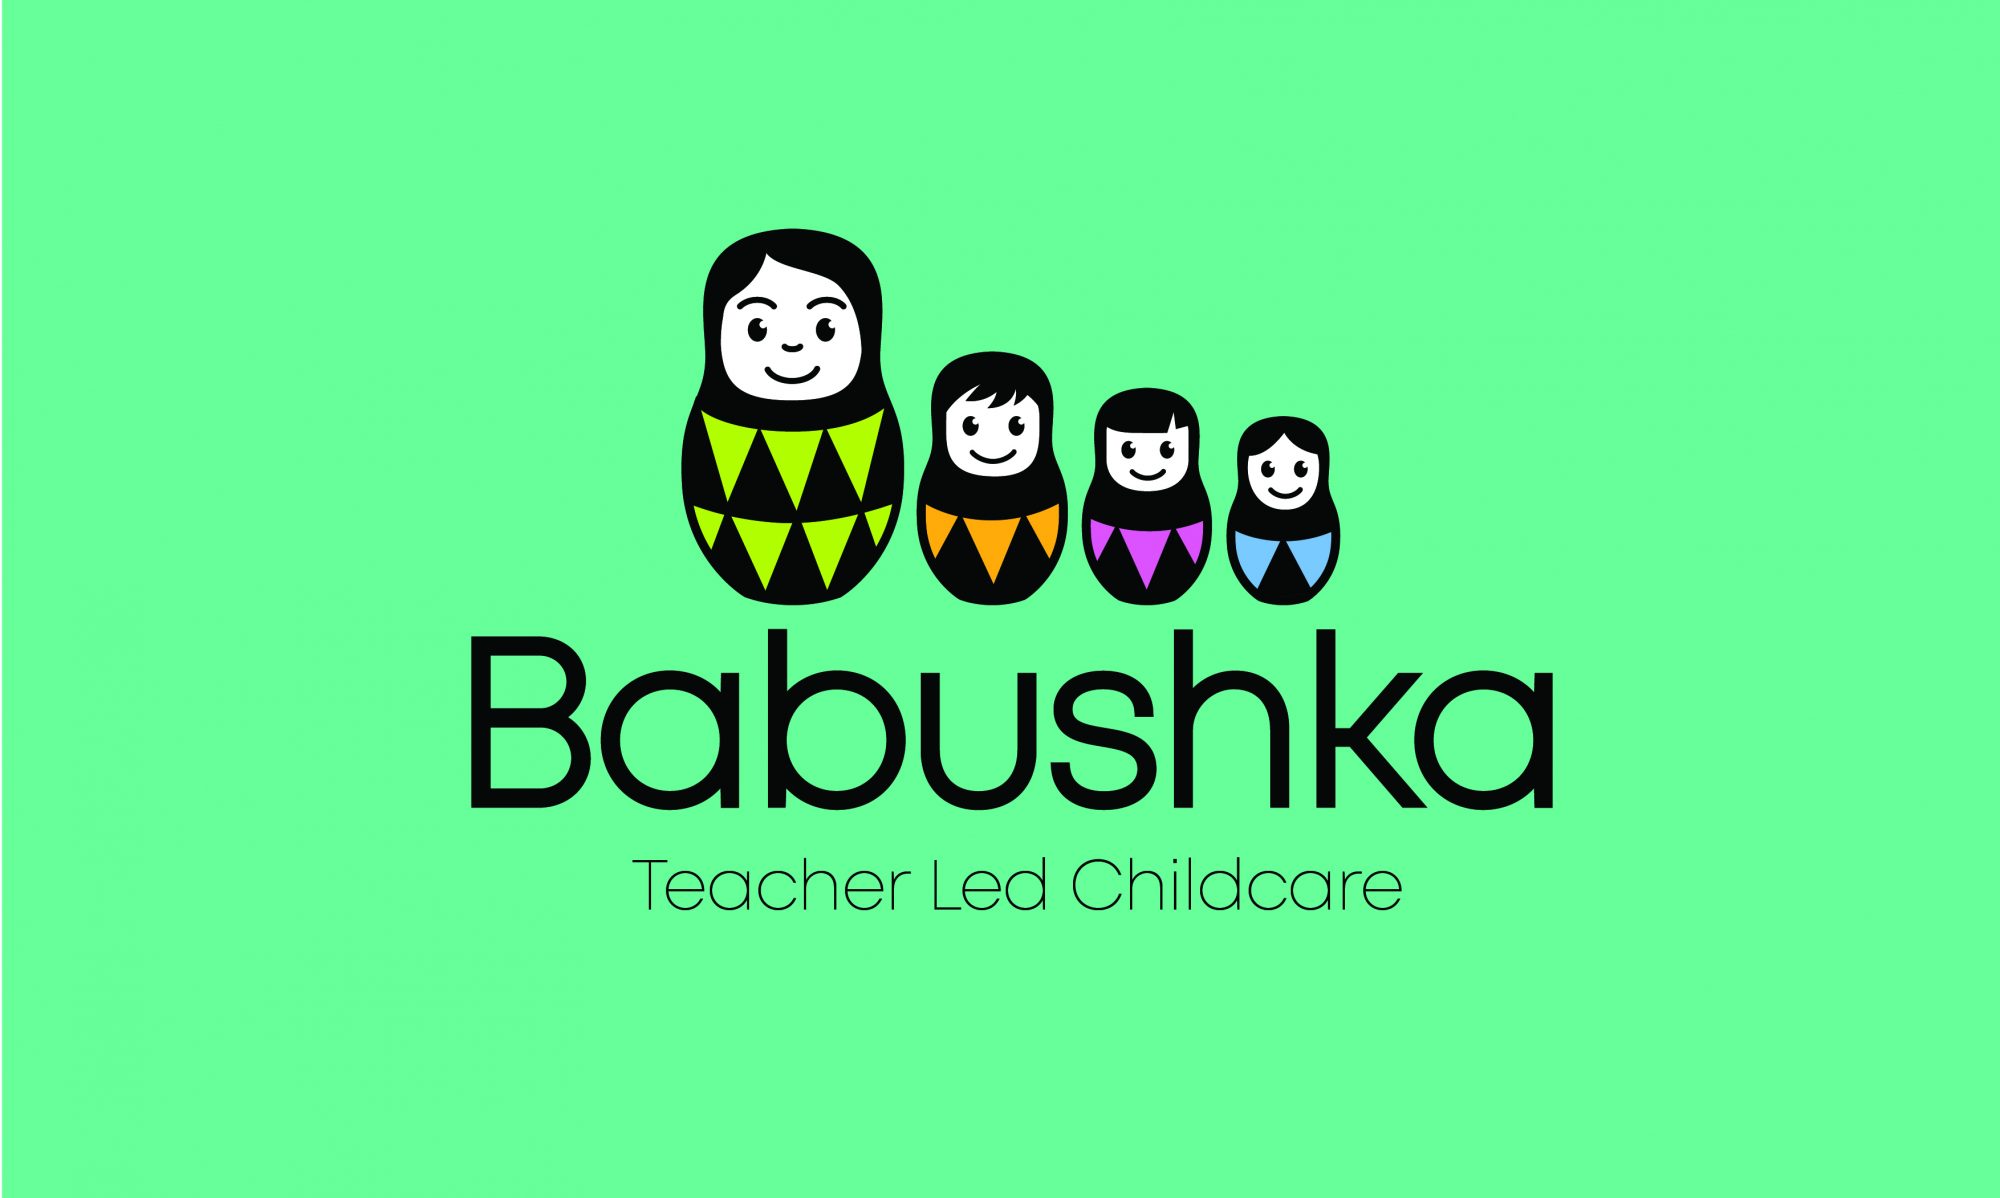 Babushka Teacher Led Childcare